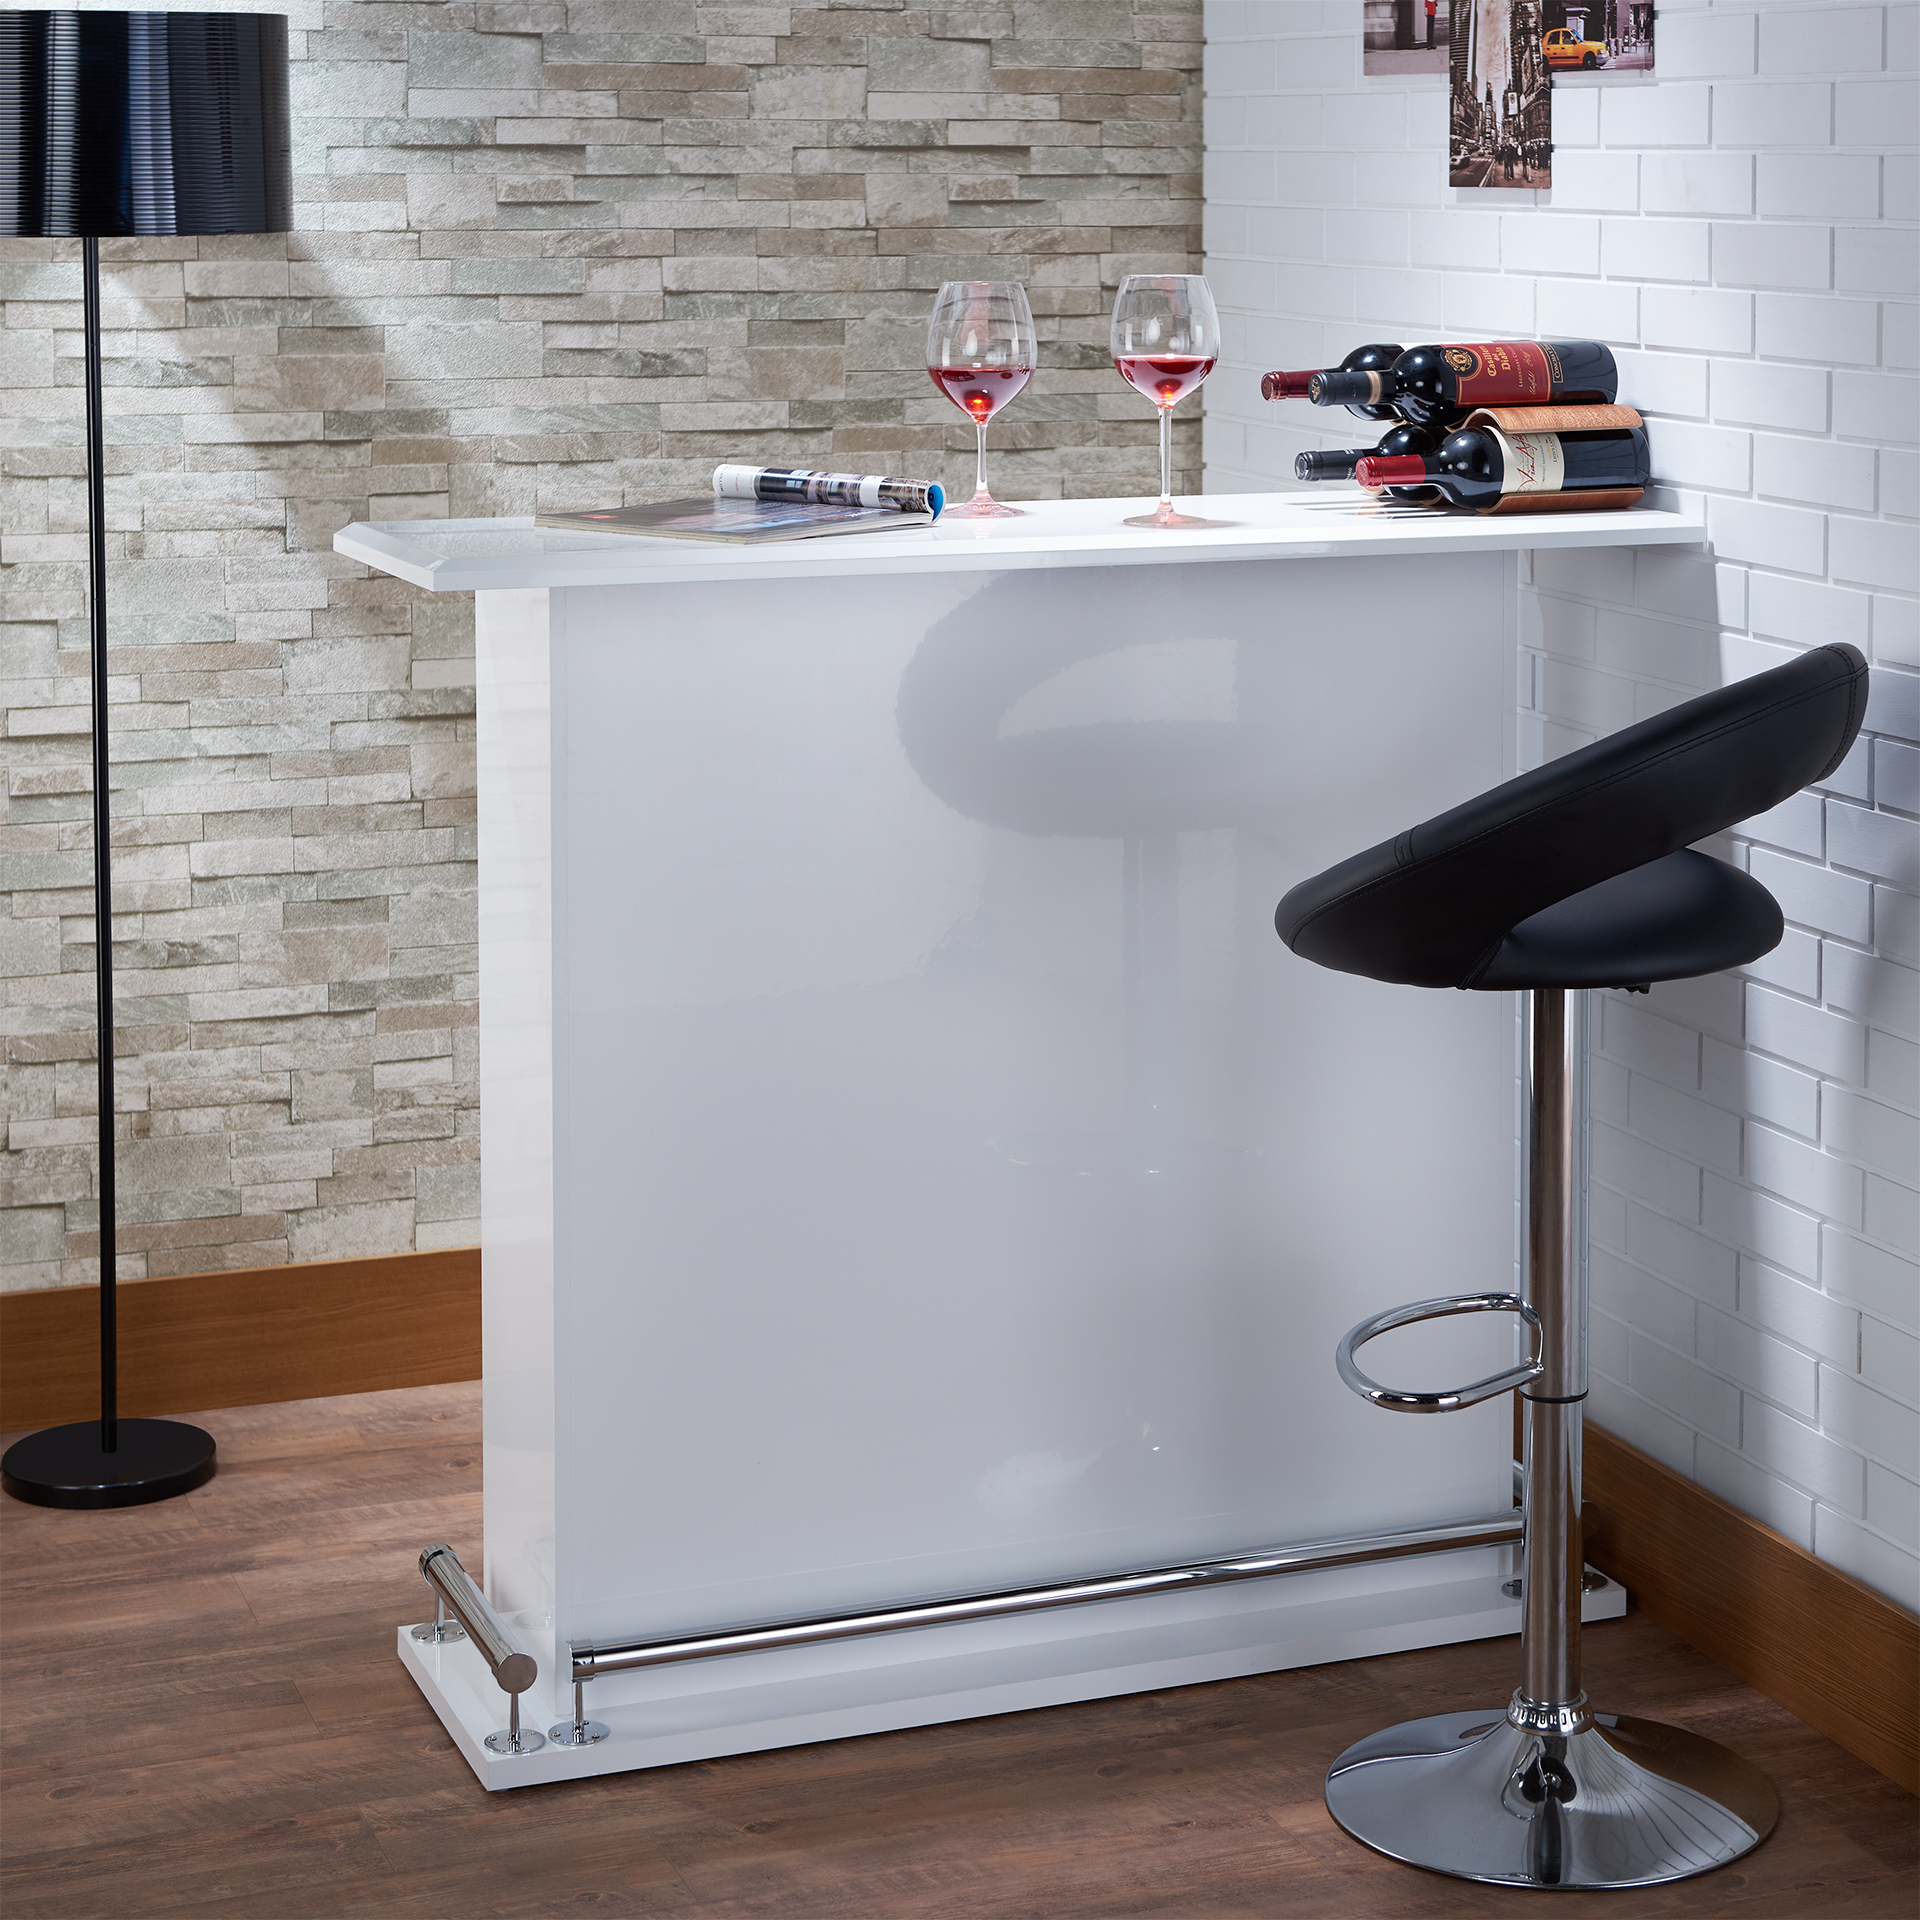 Taburete, objeto de asiento simple con un diseño moderno y sencillo